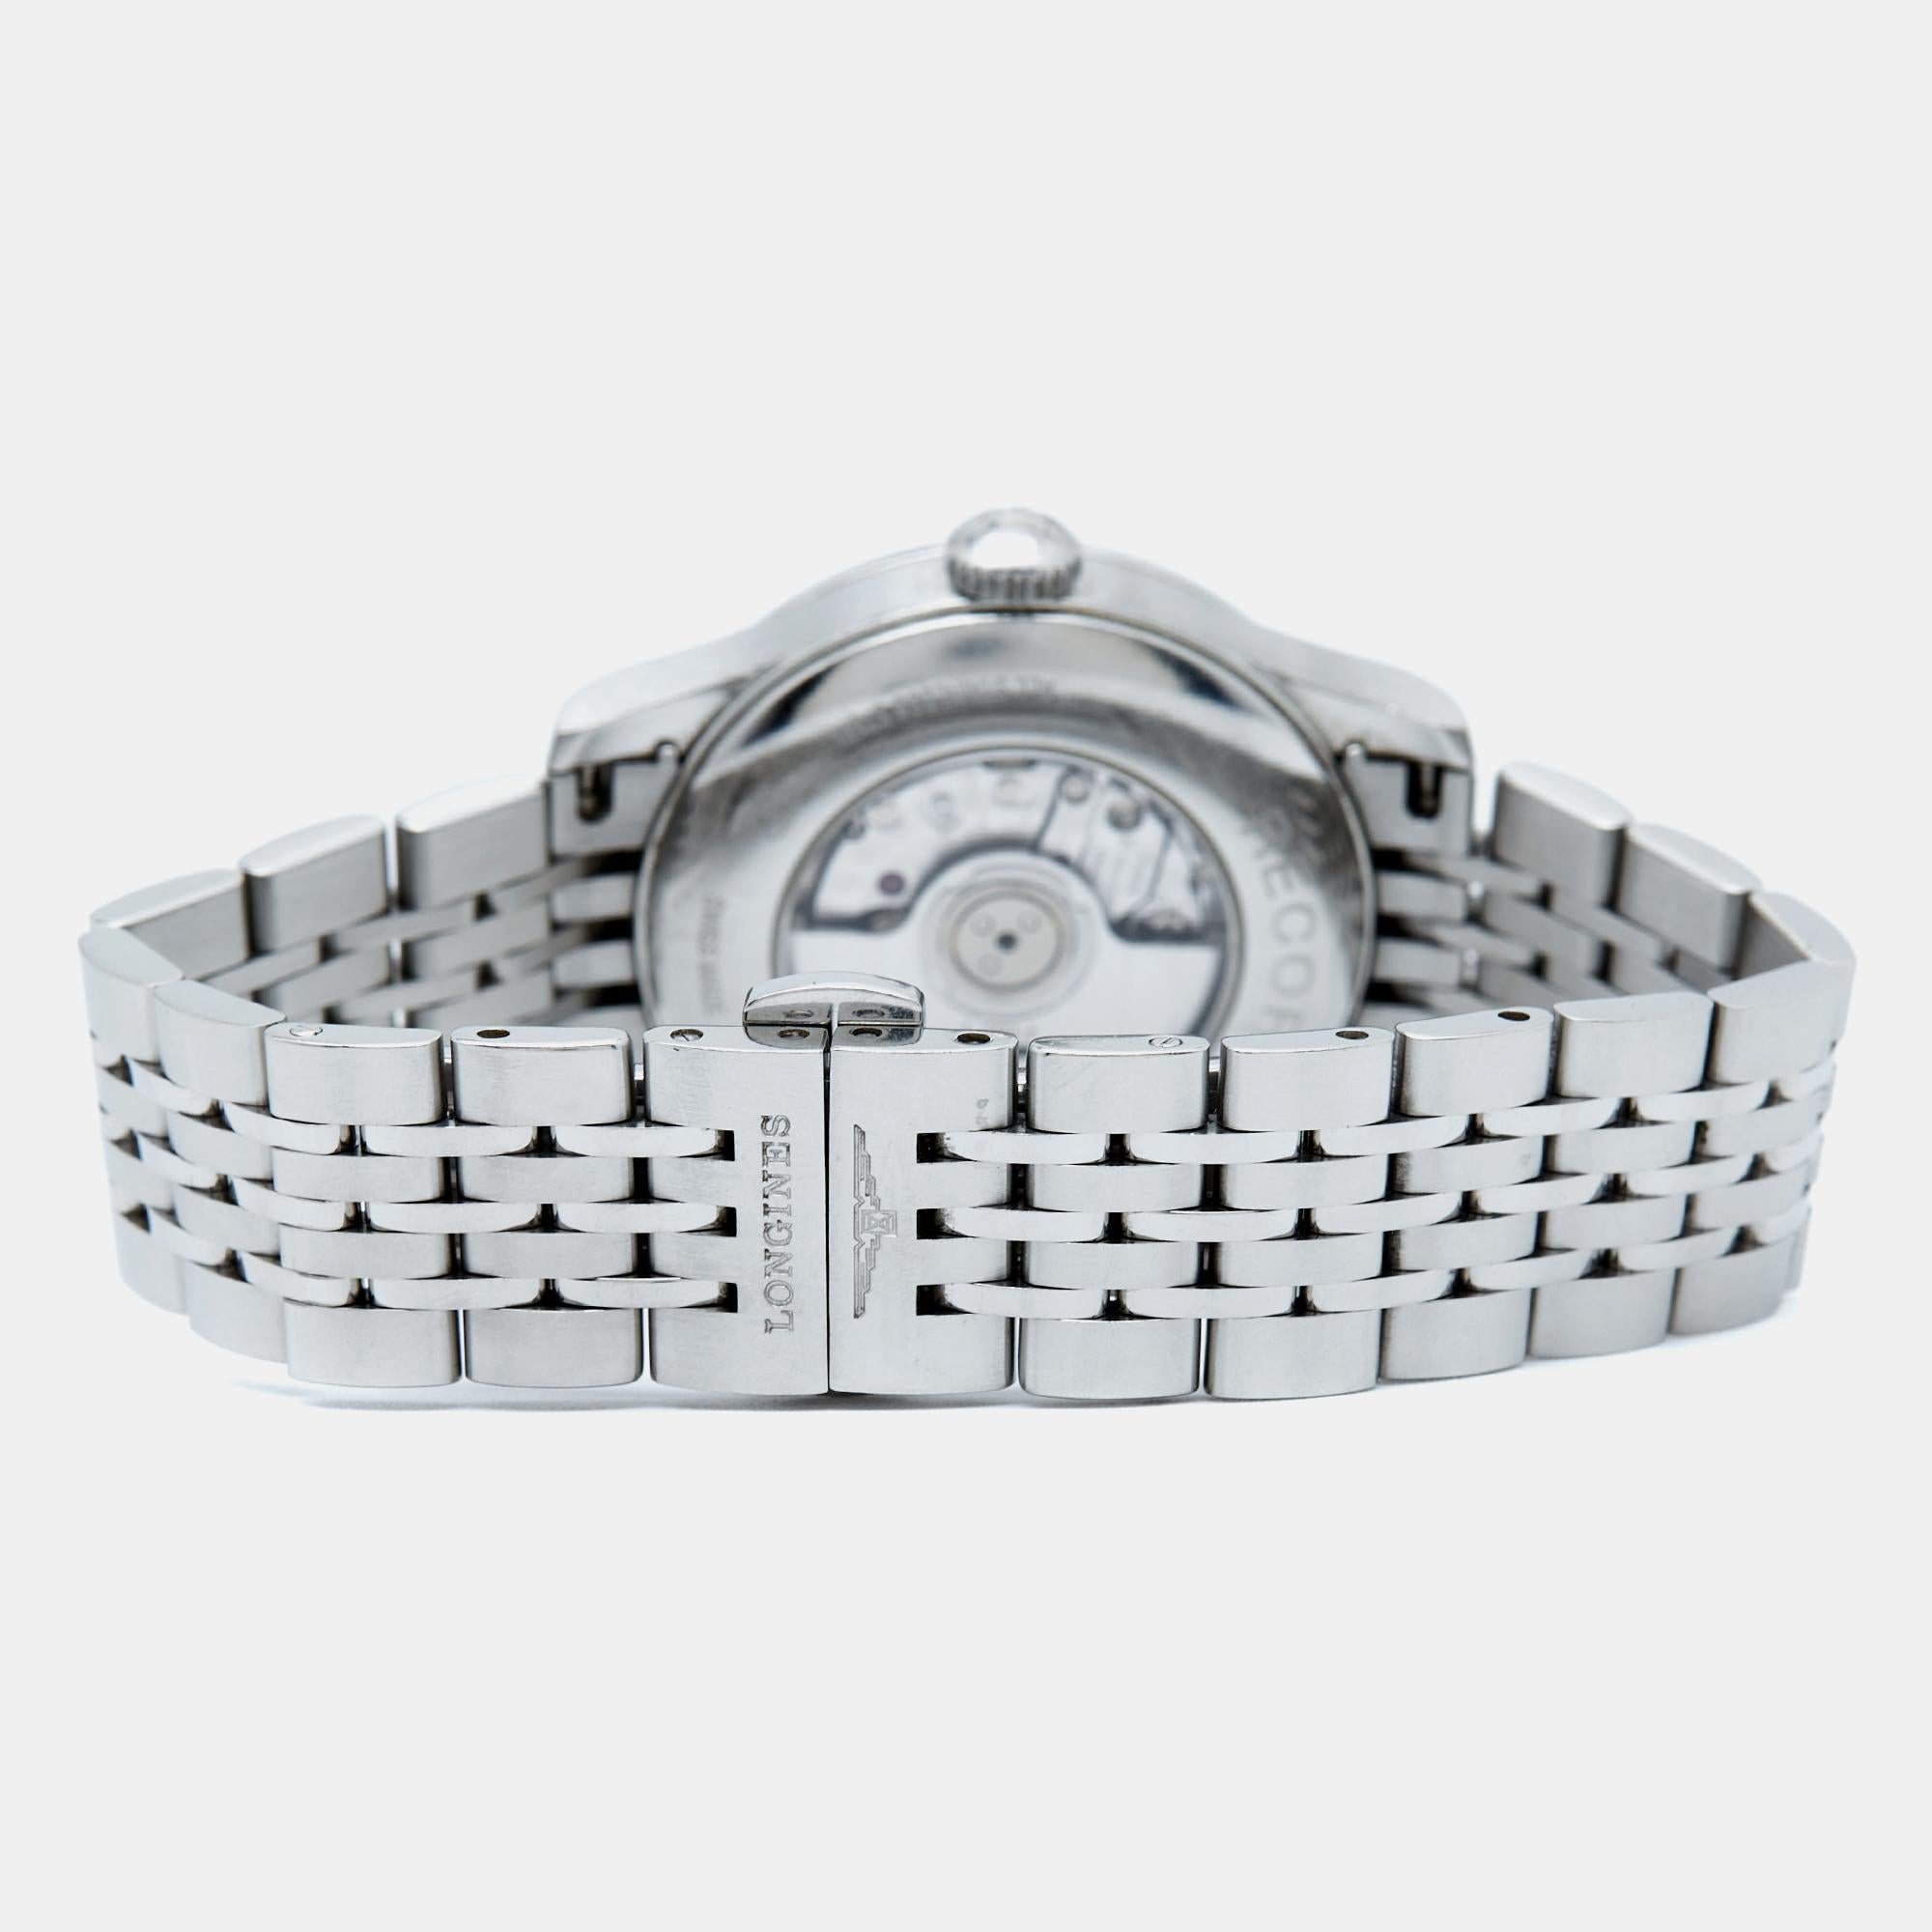 Dieser authentische Luxus-Zeitmesser hilft Ihnen, jeden Moment zu genießen! Diese Longines-Uhr ist ein funktionelles Accessoire, das mit viel Geschick aus hochwertigen Materialien hergestellt wird und Ihnen einen luxuriösen Stil verleiht, während